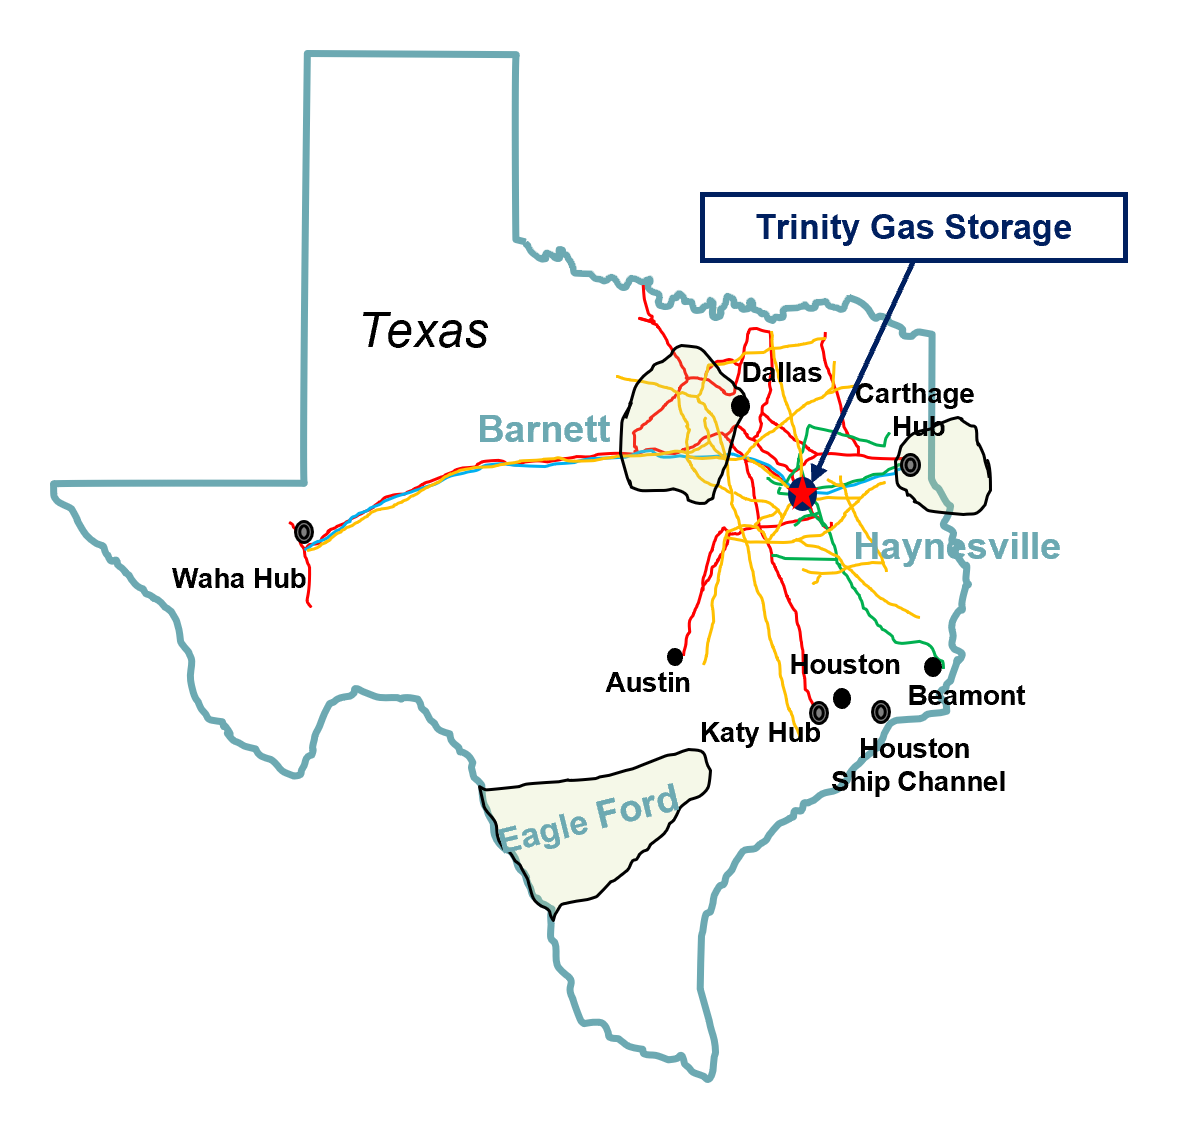 Map of Trinity Gas Storage